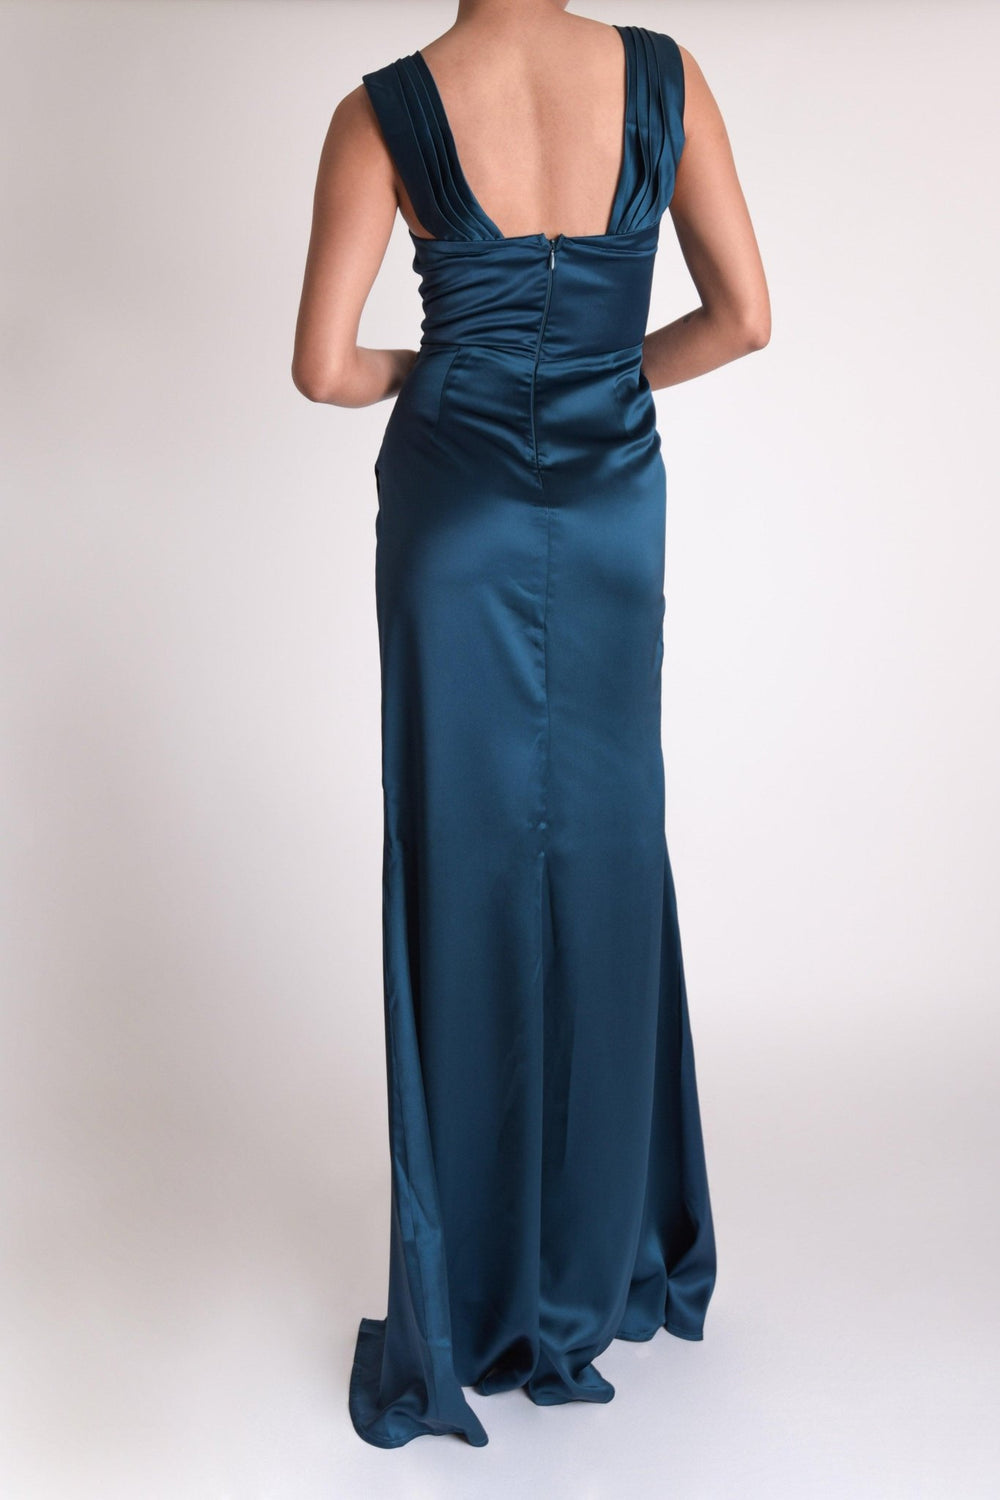 Sasha - azul - Lend the Trend renta de vestidos mexico